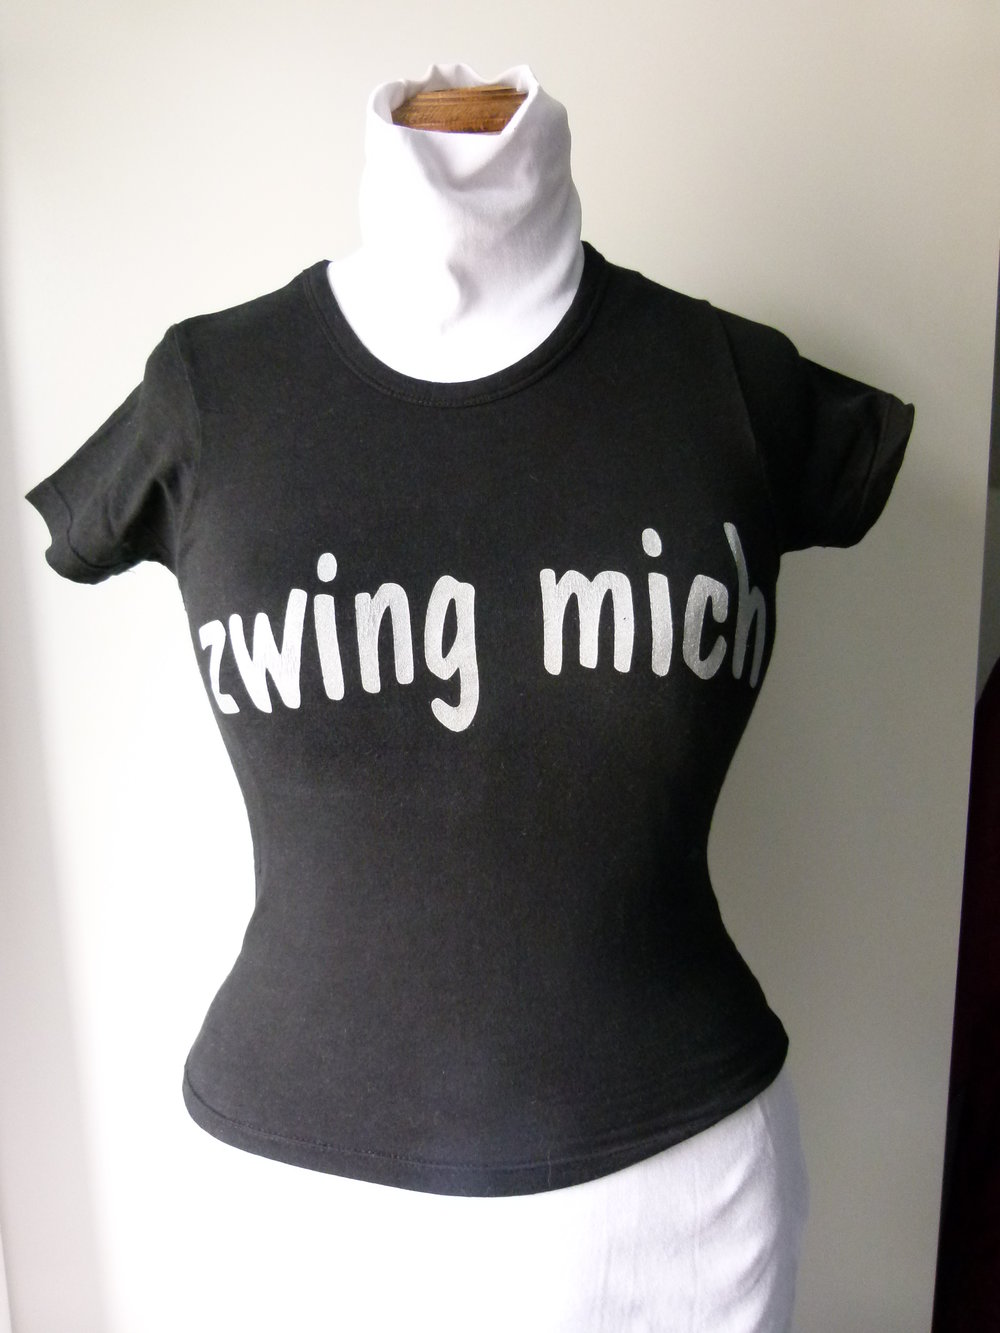 Girlie Shirt 'Zwing mich', schwarz mit silbernen Schriftzug, Gothic Metal Emo Alternative Sprücheshirt T-Shirt